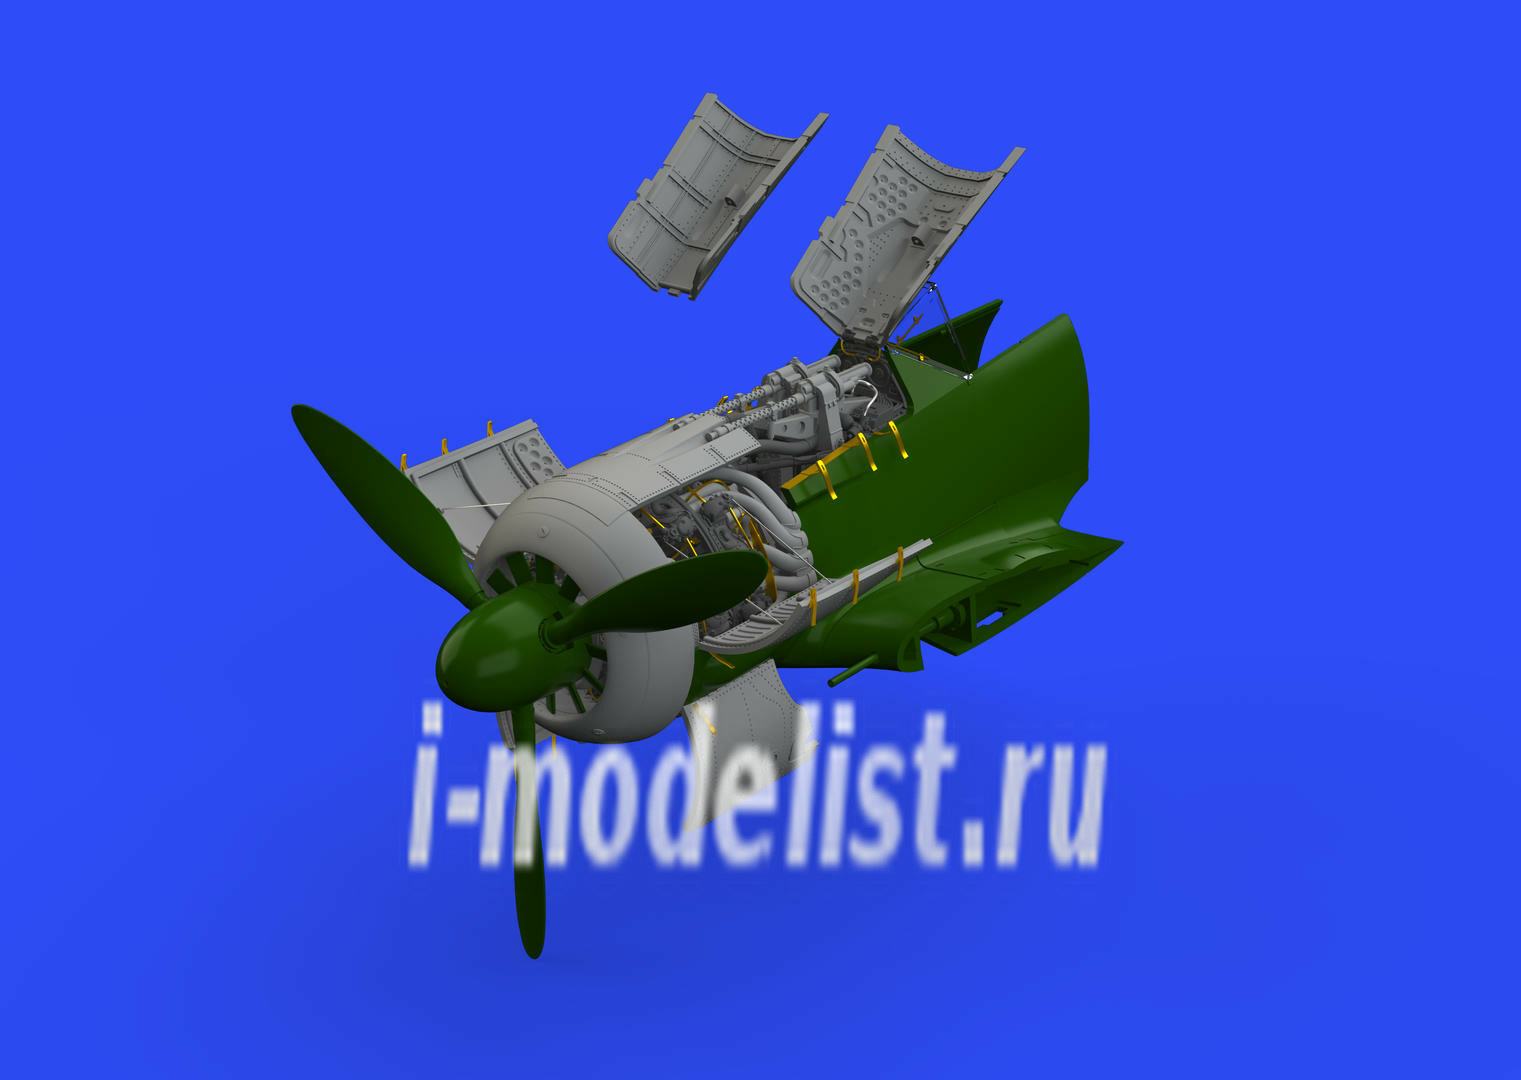 648408 Edward 1/48 add-on Kit Fw 190A-5 engine & fuselage guns